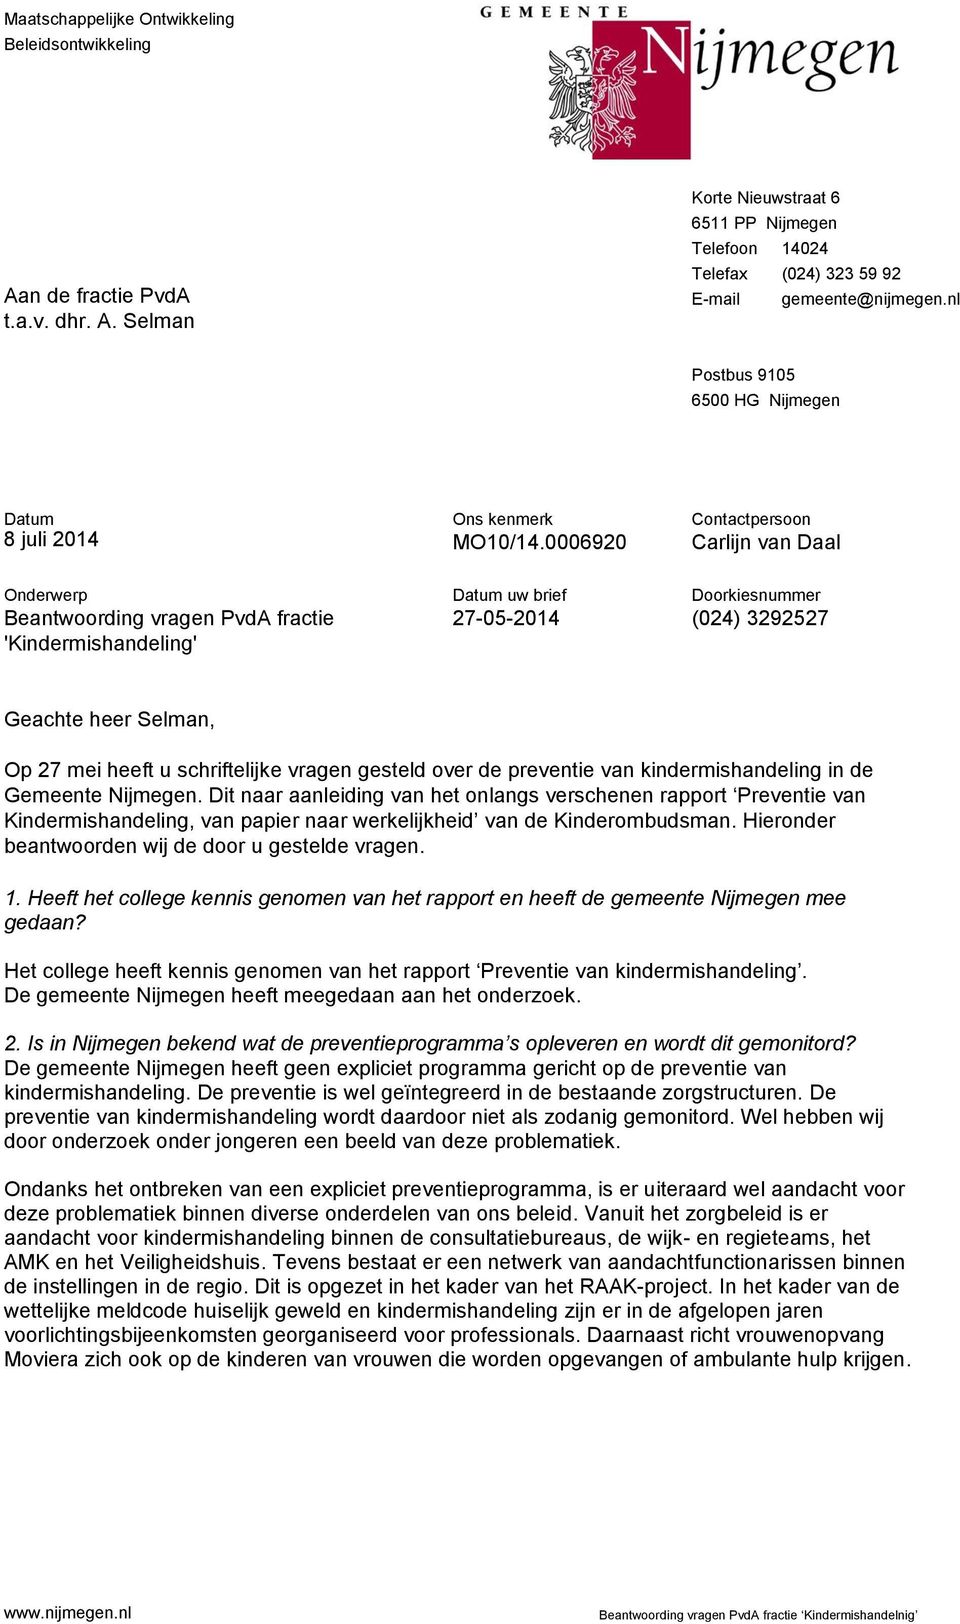 0006920 Contactpersoon Carlijn van Daal Onderwerp Beantwoording vragen PvdA fractie 'Kindermishandeling' uw brief 27-05-2014 Doorkiesnummer (024) 3292527 Geachte heer Selman, Op 27 mei heeft u